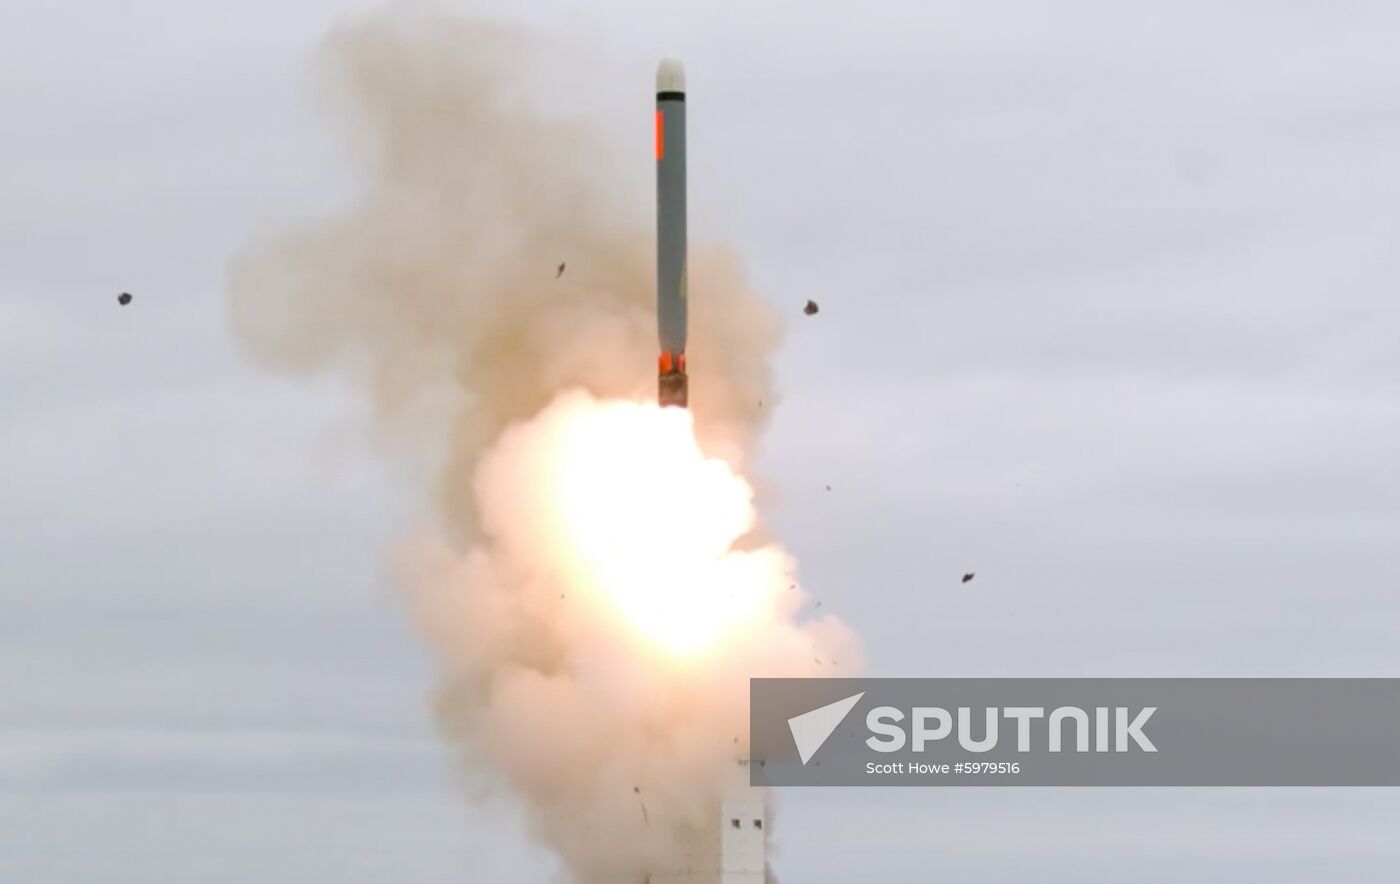 US Intermediate Range Missile Test